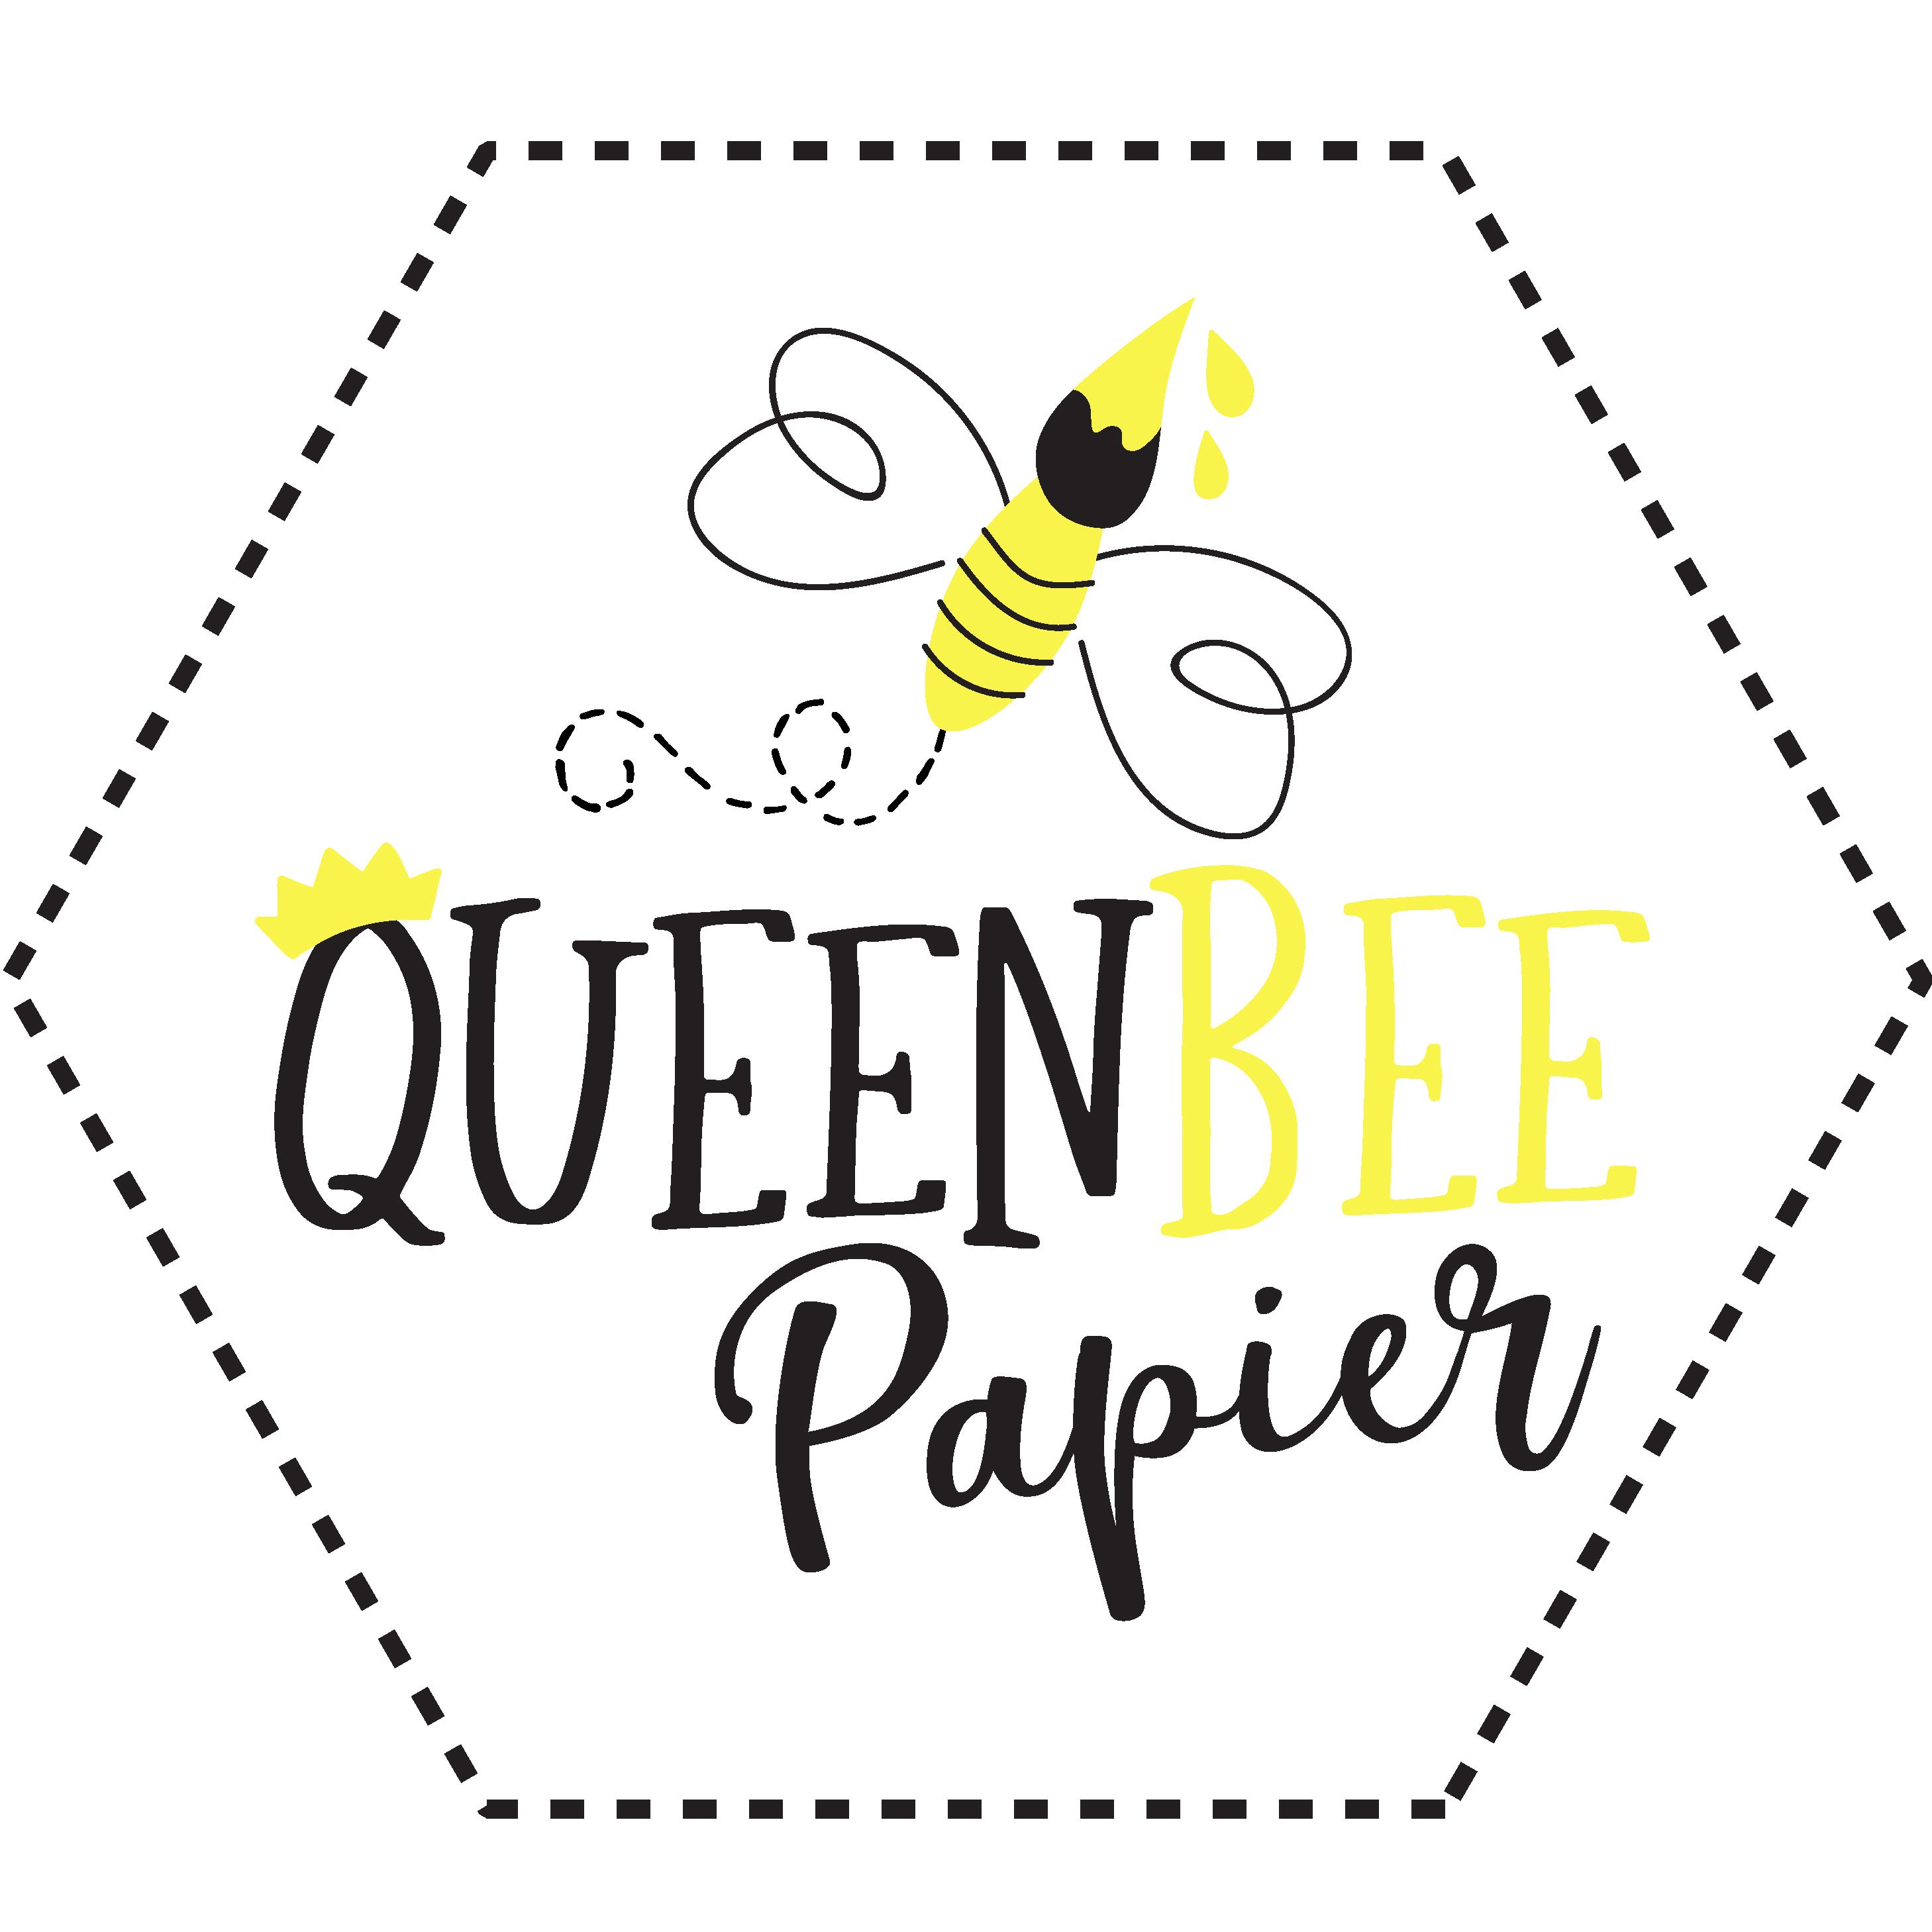 Queen Bee Papier